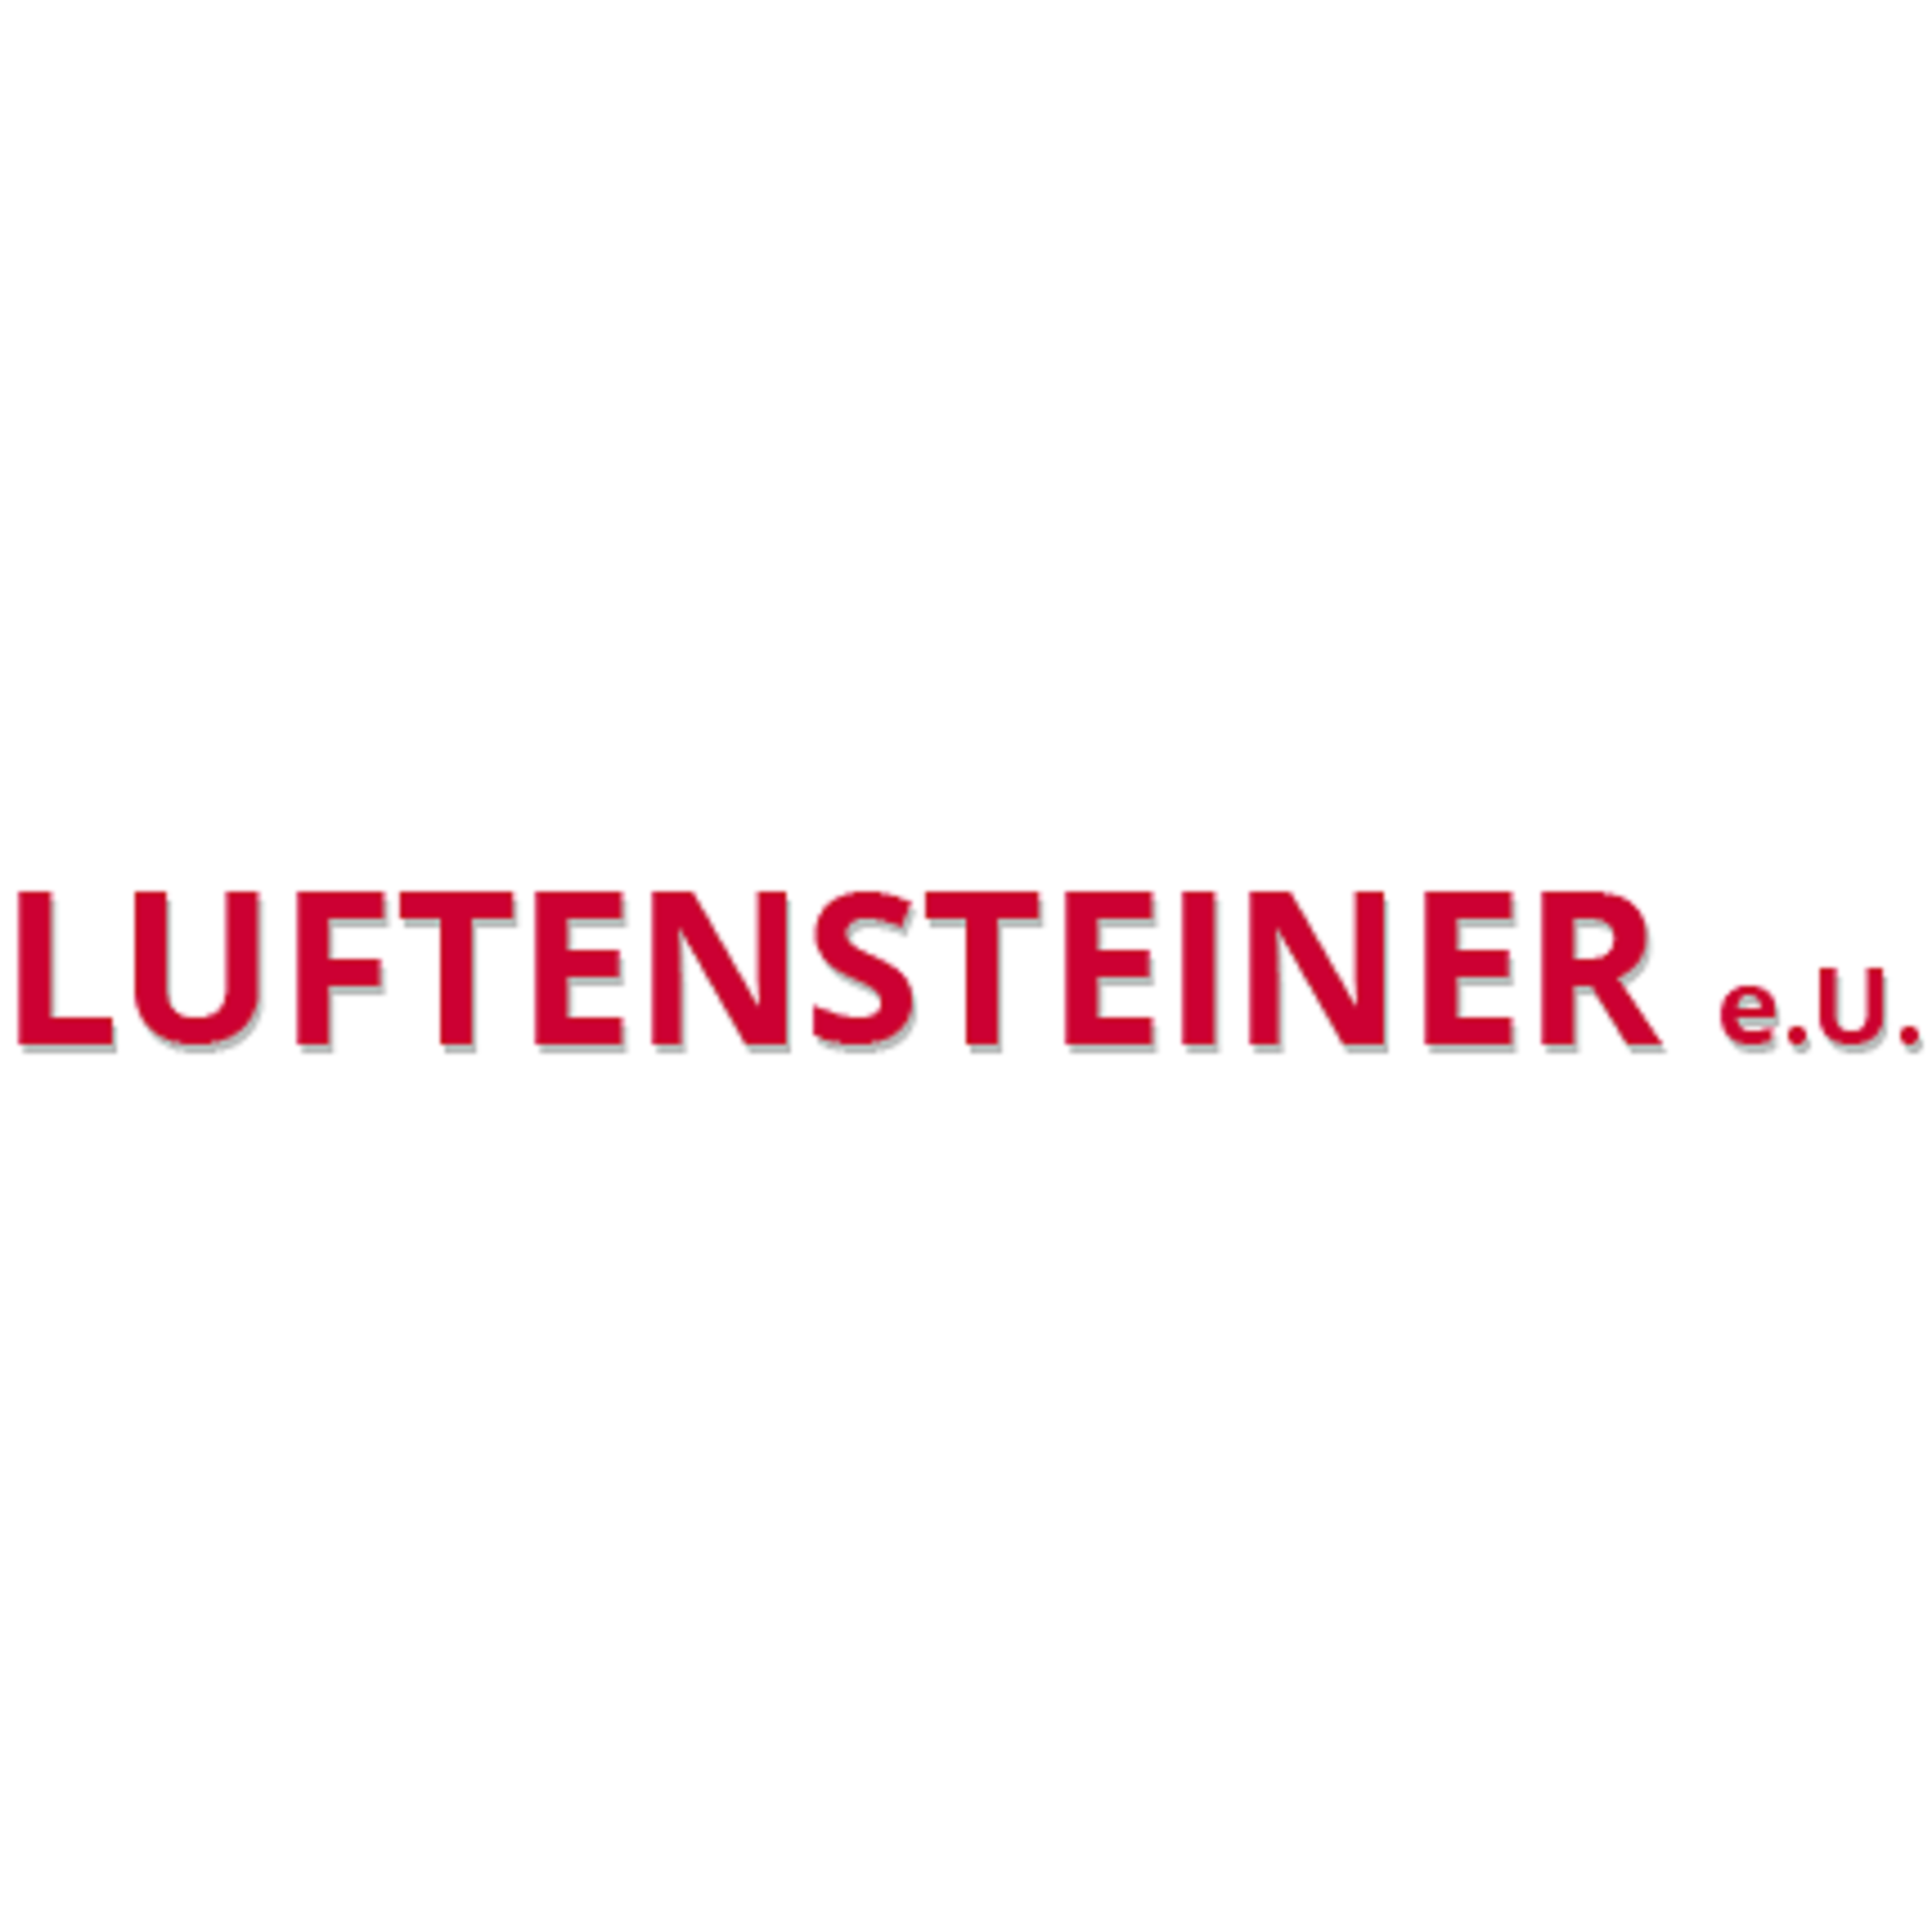 Werner Luftensteiner e.U. - Beh. konz. Installateur Logo